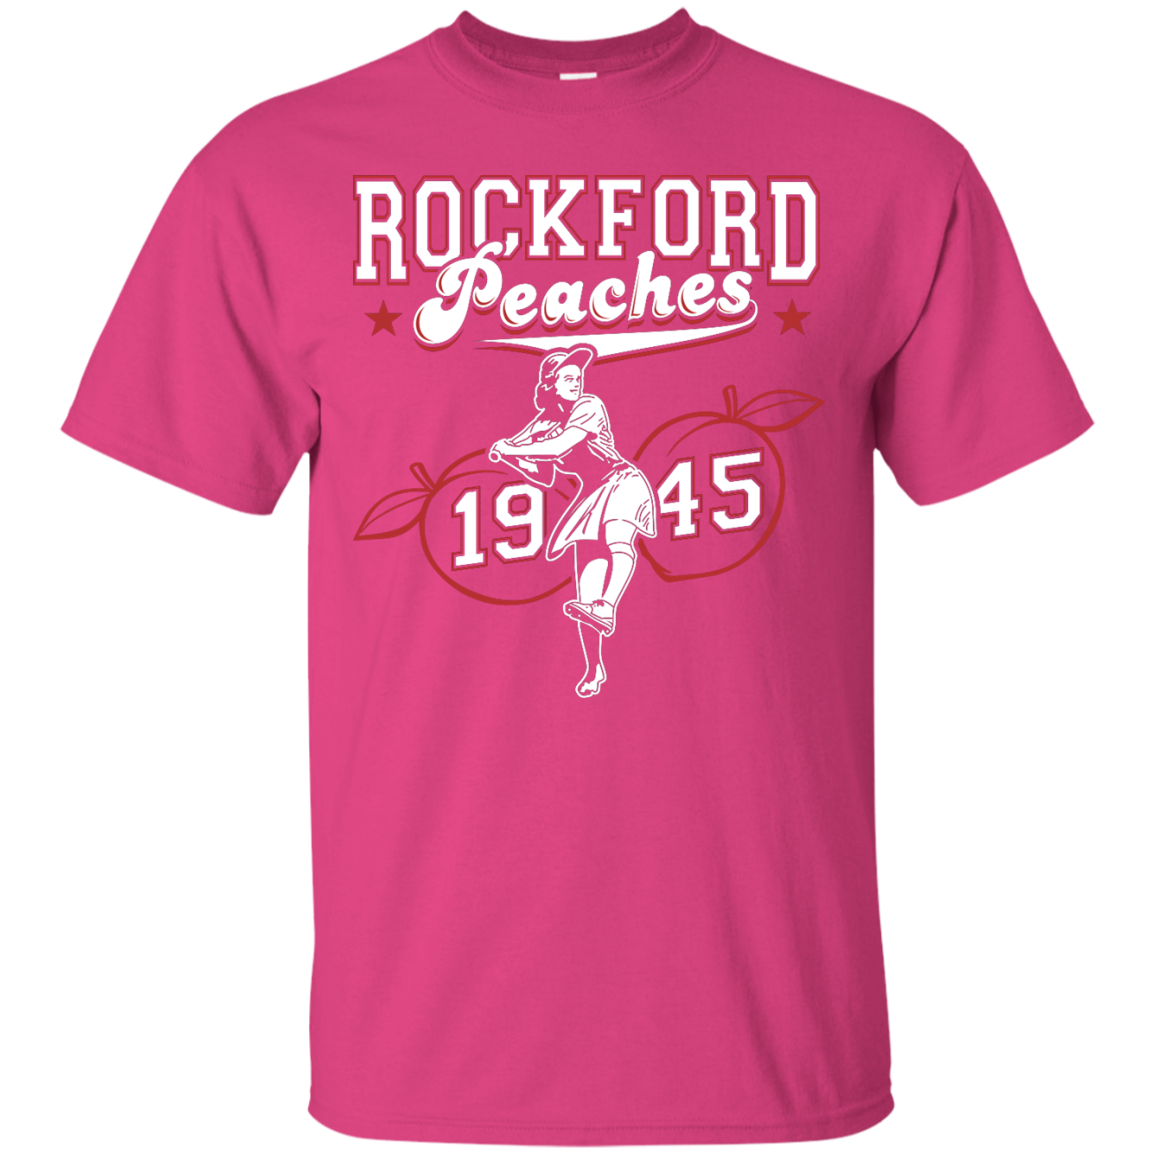 rockford peaches t shirt